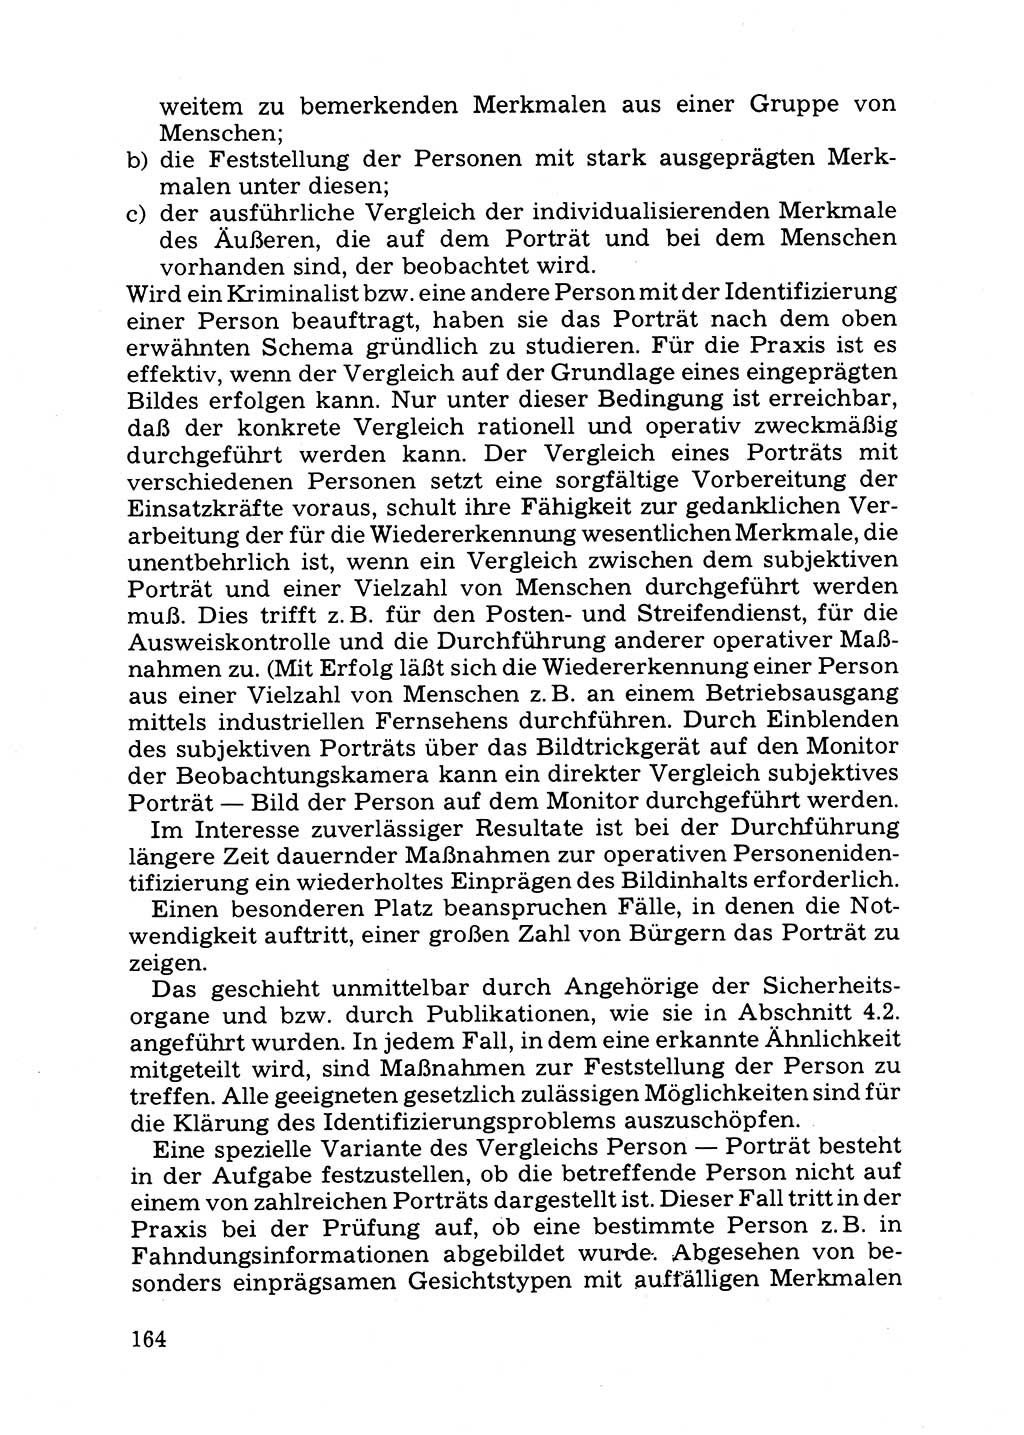 Das subjektive Porträt [Deutsche Demokratische Republik (DDR)] 1981, Seite 164 (Subj. Port. DDR 1981, S. 164)